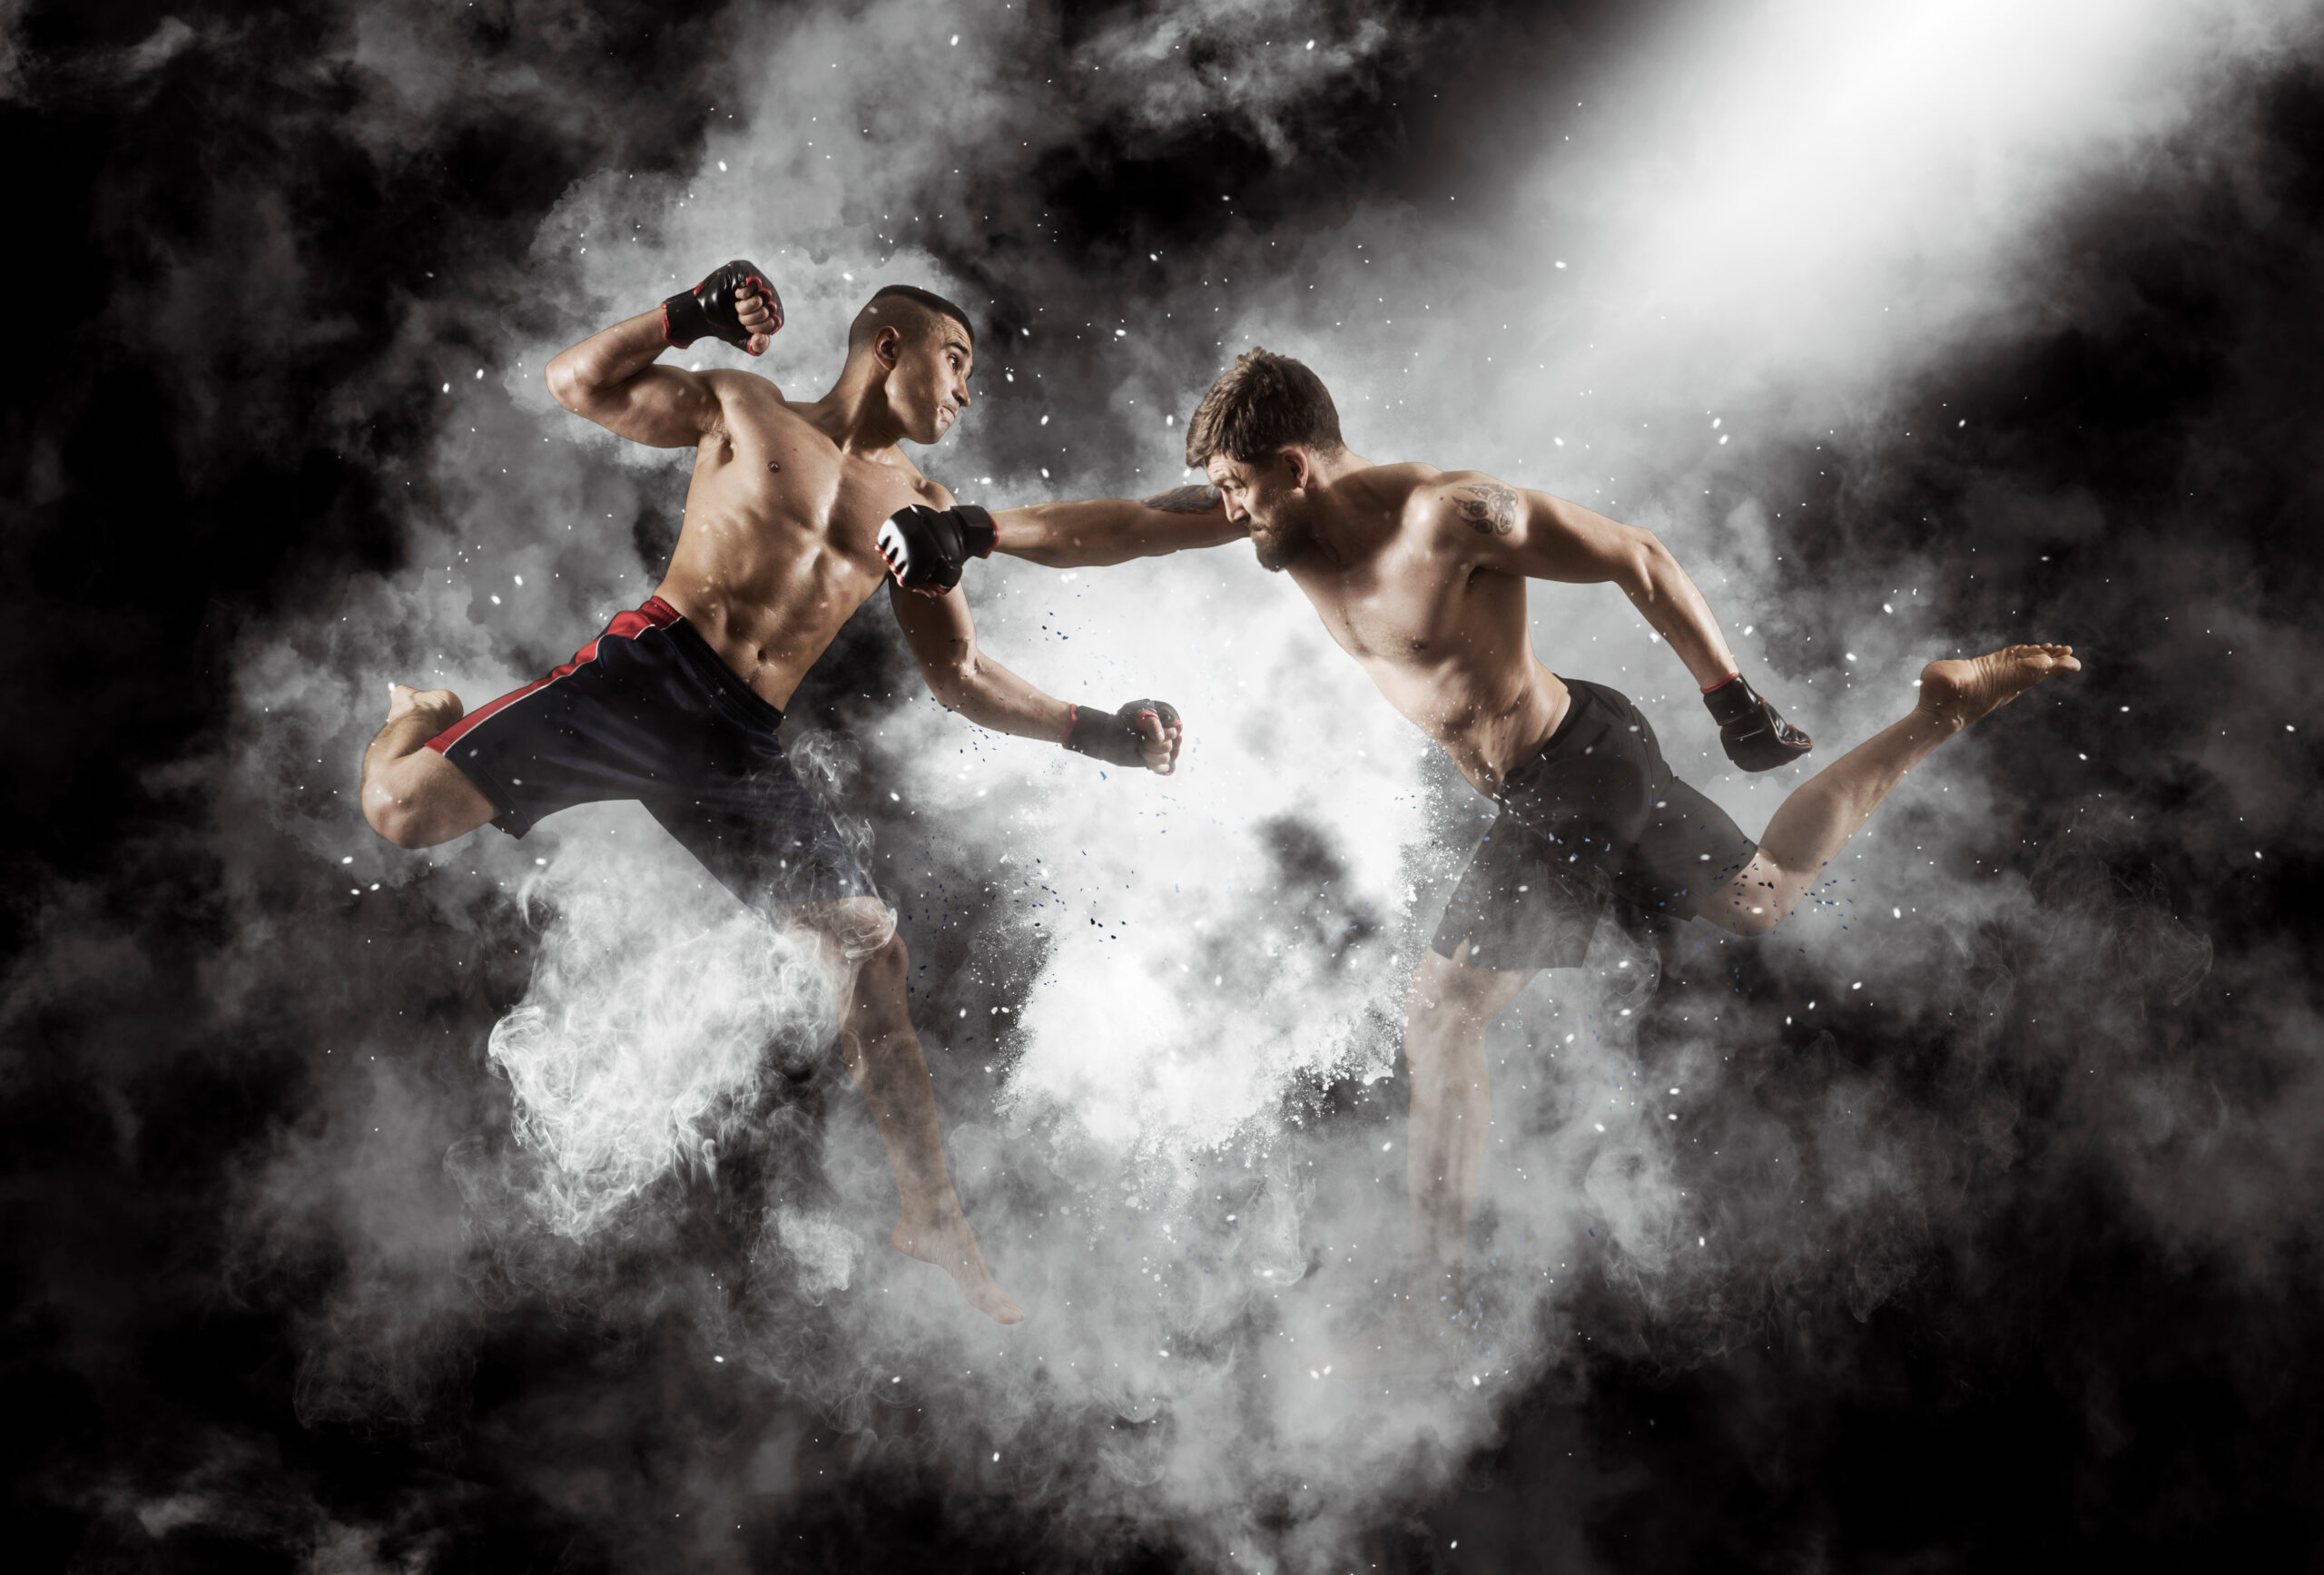 Najbardziej ekscytujące pojedynki w historii MMA: Które walki zapadły w pamięć?